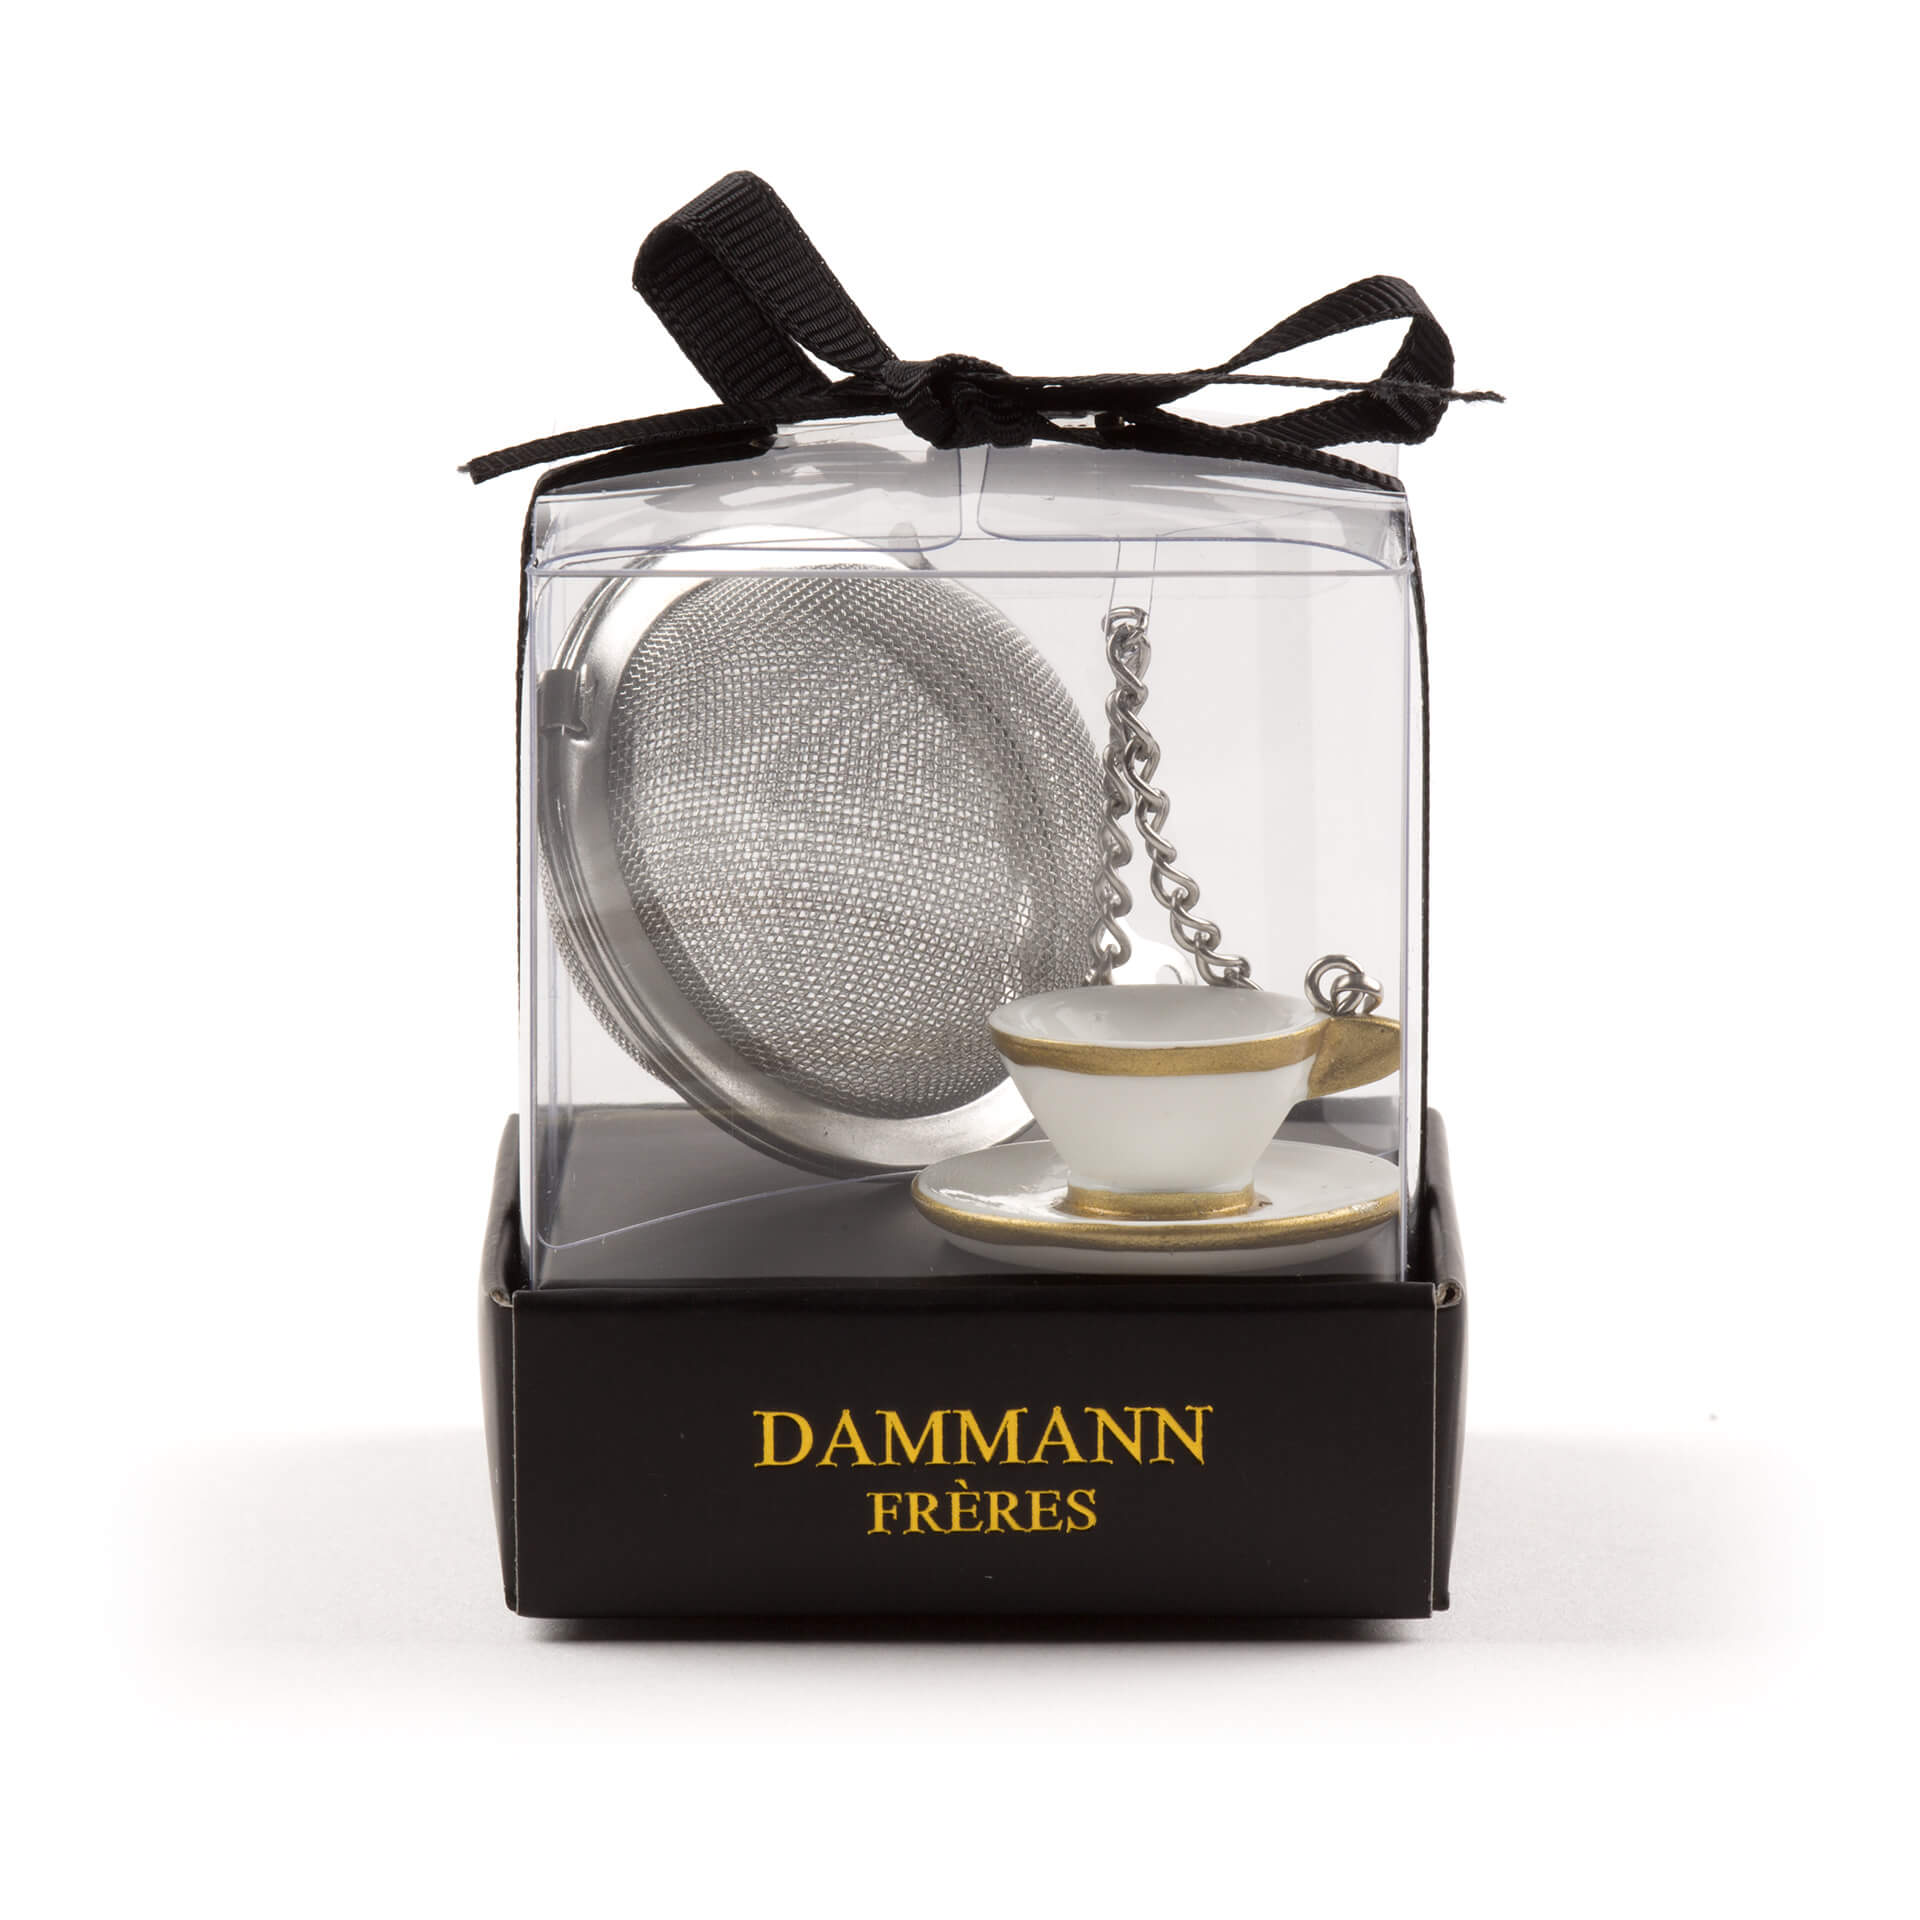 Dammann Frères "Five O'clock Cup" Mesh Teaball, Tea Preparation, 18-20-9903